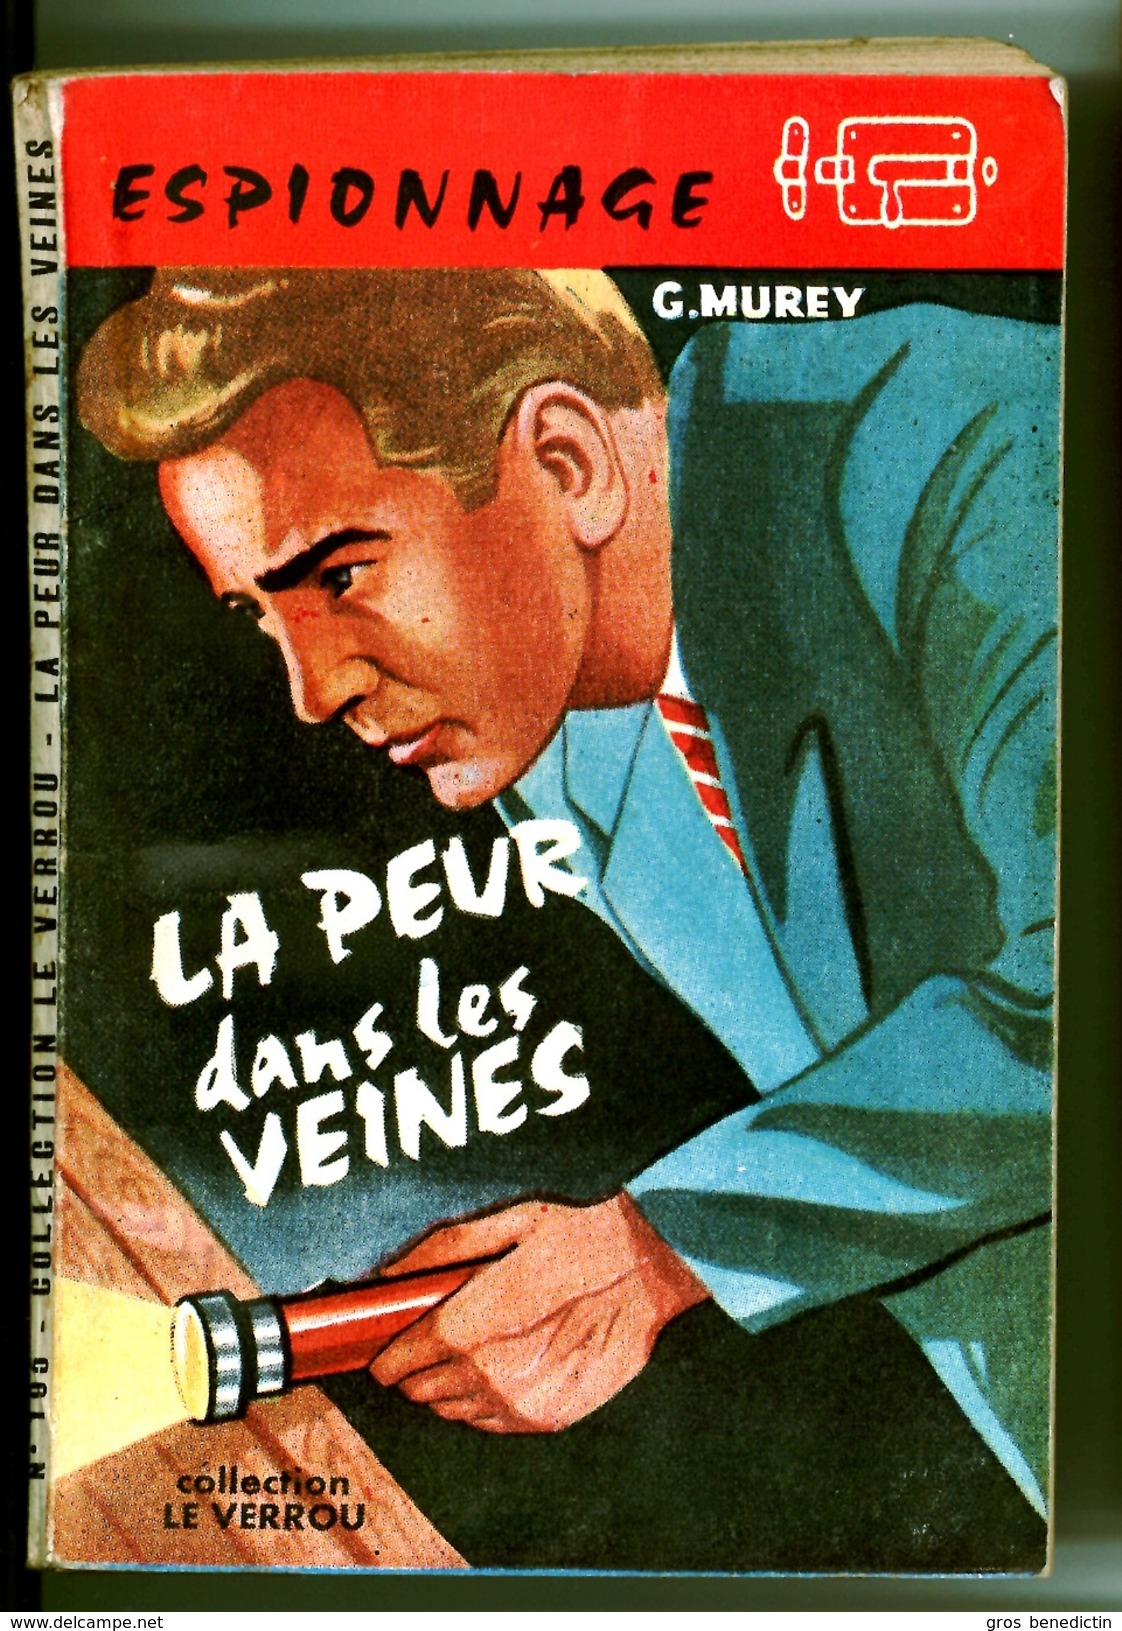 Collection Le Verrou N°195 - G. Murey - "La Peur Dans Les Veines" - 1958 - Ferenczi